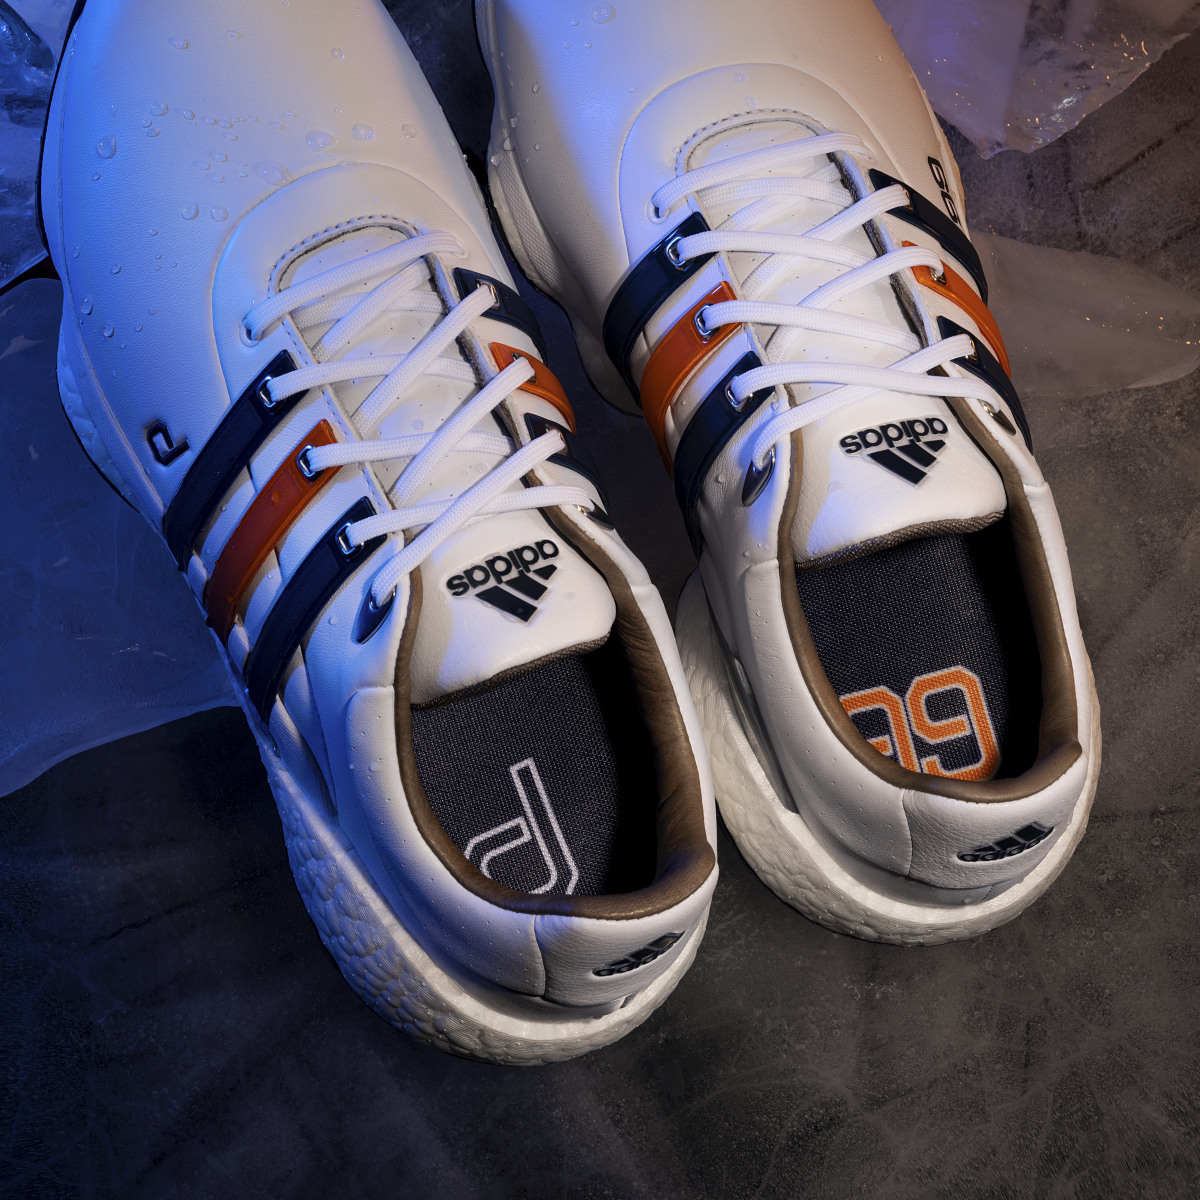 Adidas DJ Gretzky Tour360 22 Golf Shoes. 7